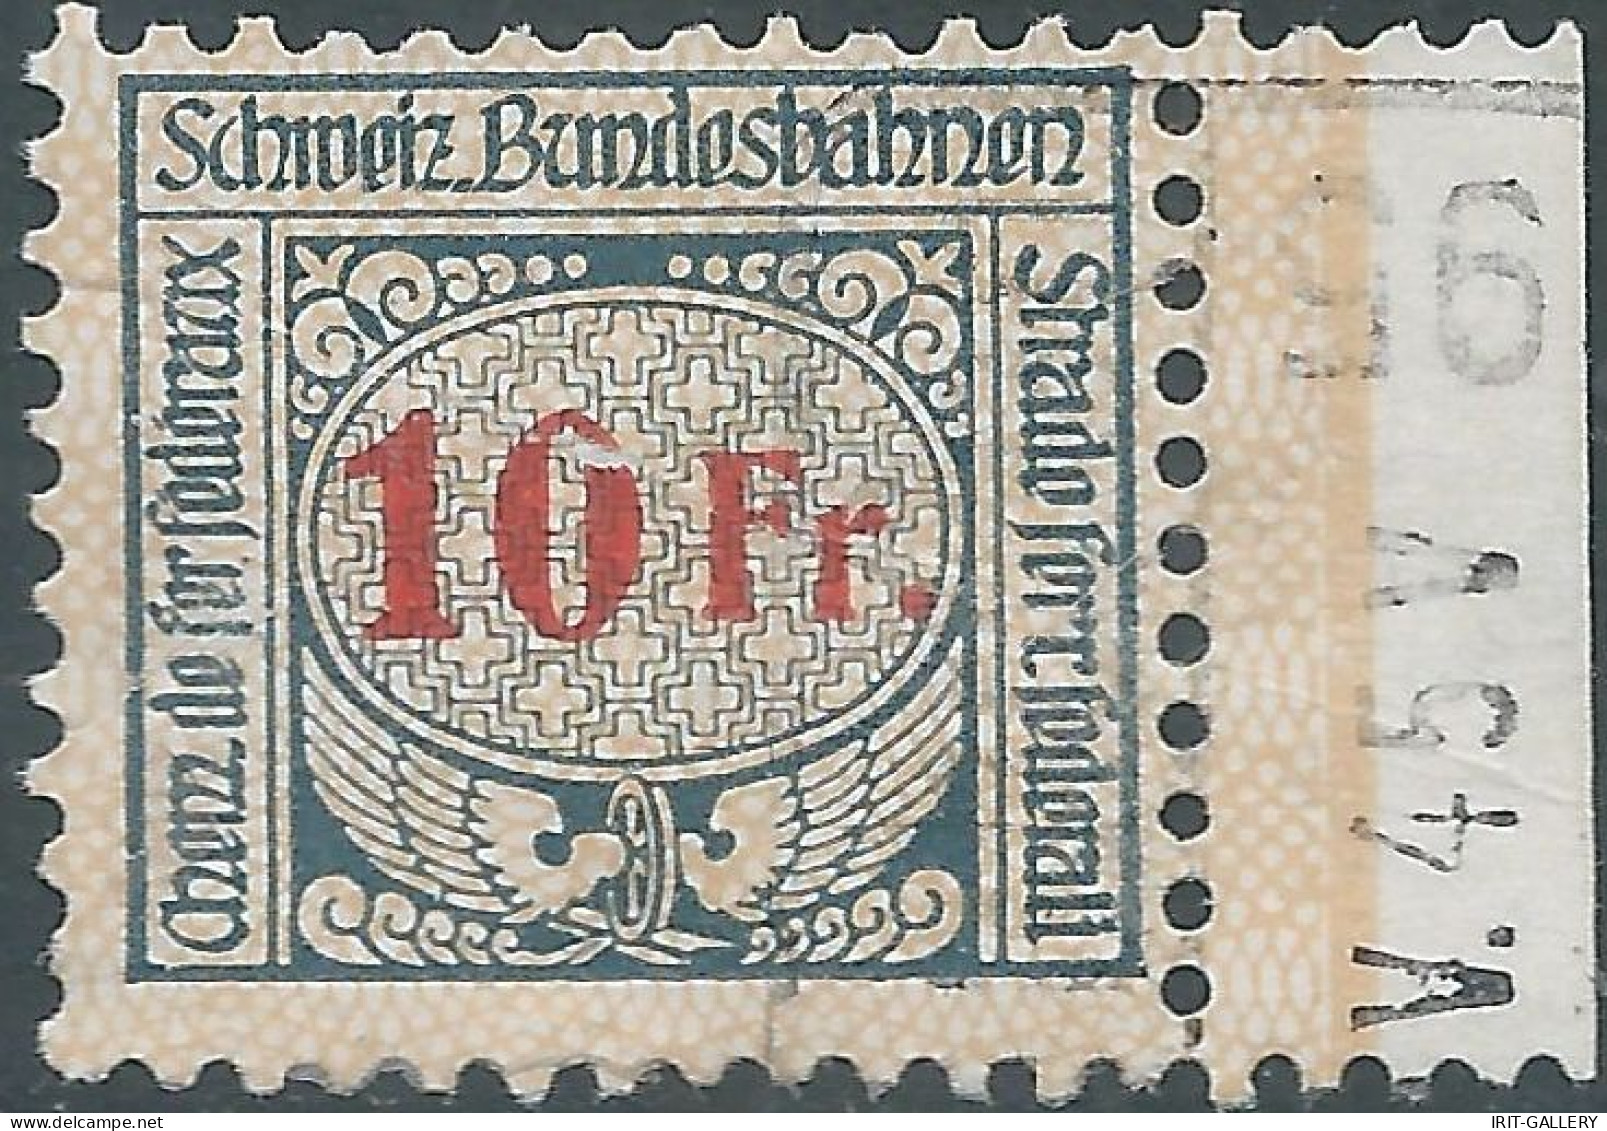 Svizzera-Switzerland-Suisse,1920/25 Revenue Stamp Tax Fiscal 10fr,SCHWEIZ.BUNDESBAHNEN-SWISS.FEDERAL RAILWAYS,Defective! - Ferrocarril